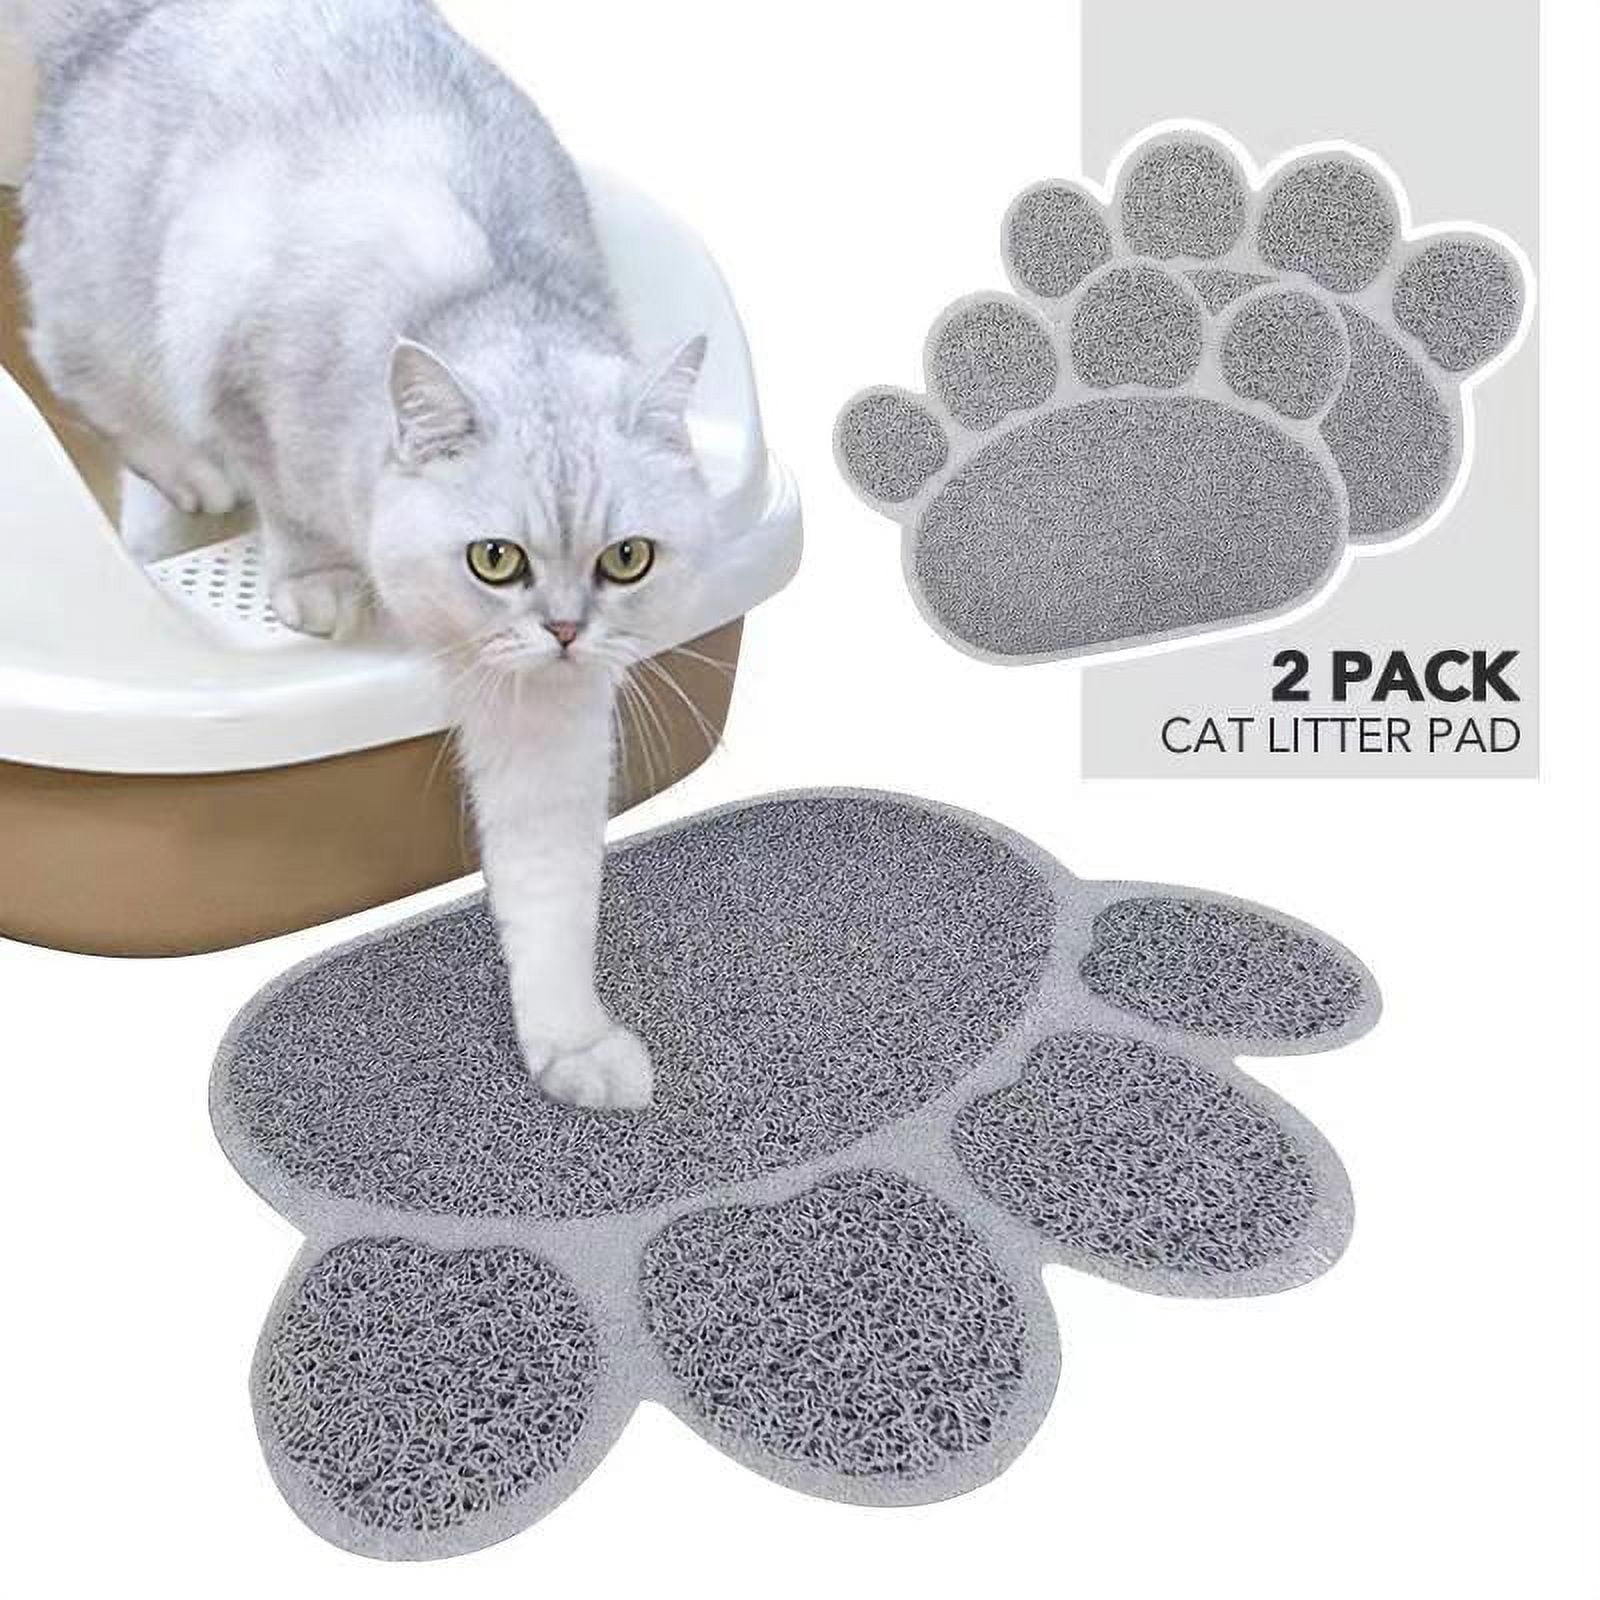 WATERPROOF CAT LITTER MAT – Pawpurmart